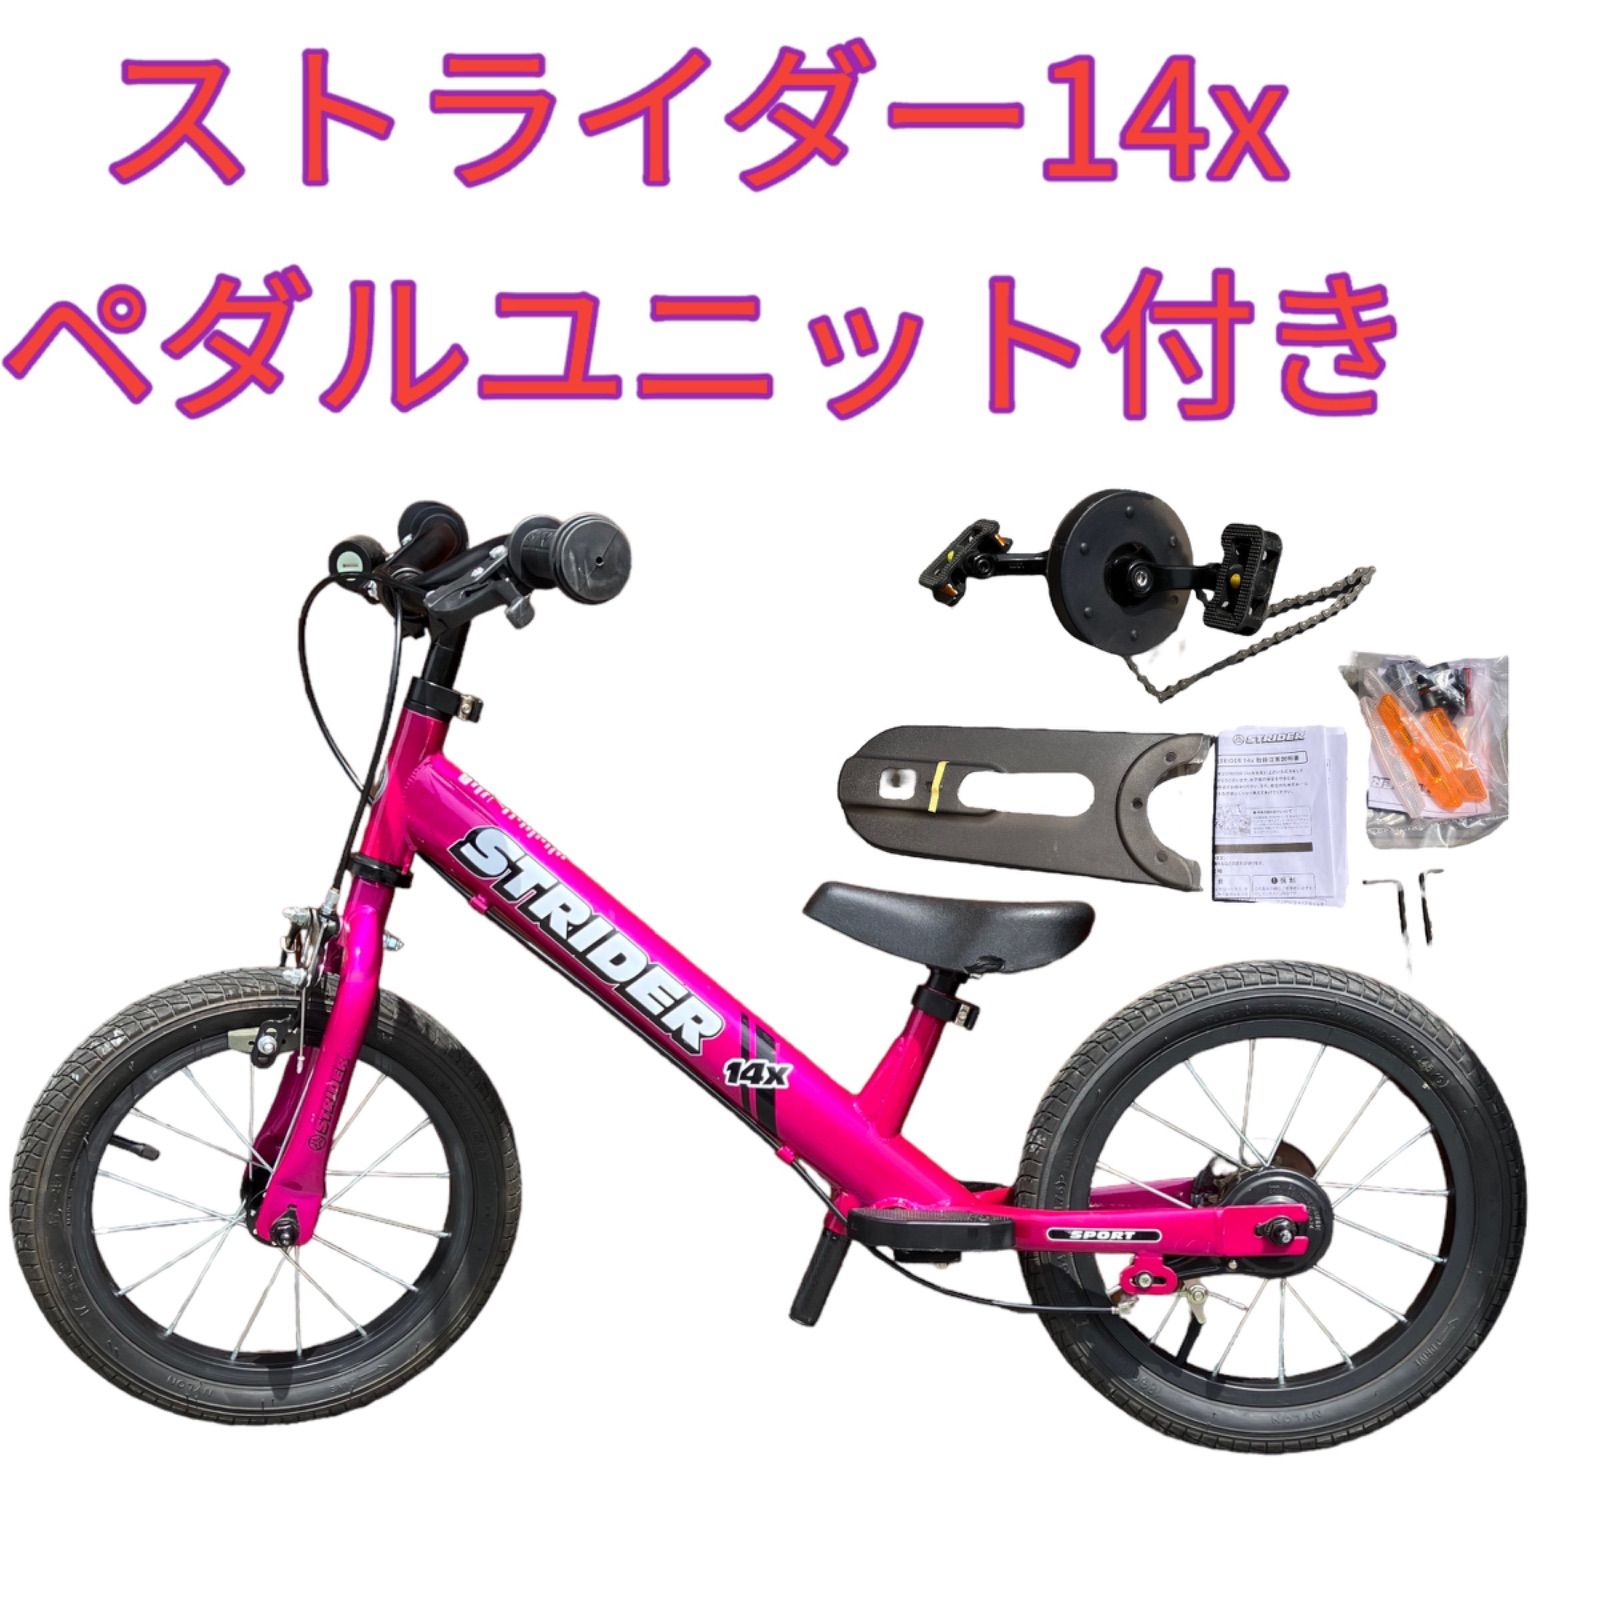 ストライダー14x ピンク - 自転車